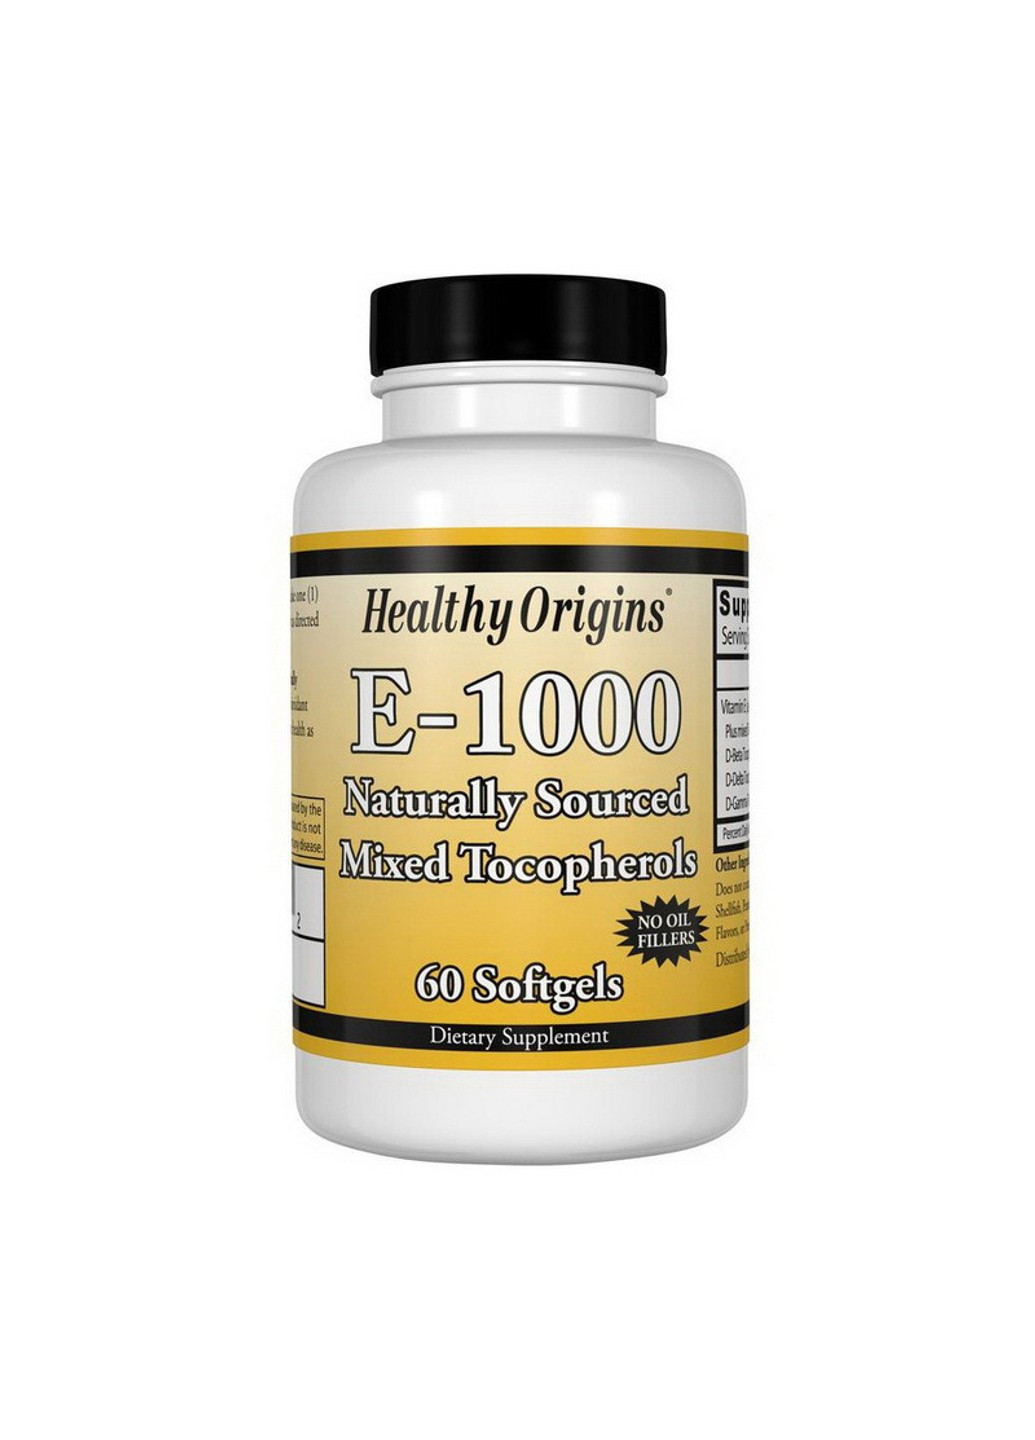 Витамин Е Vitamin E-1000 (60 капс) хелси ориджинс Healthy Origins (255410131)